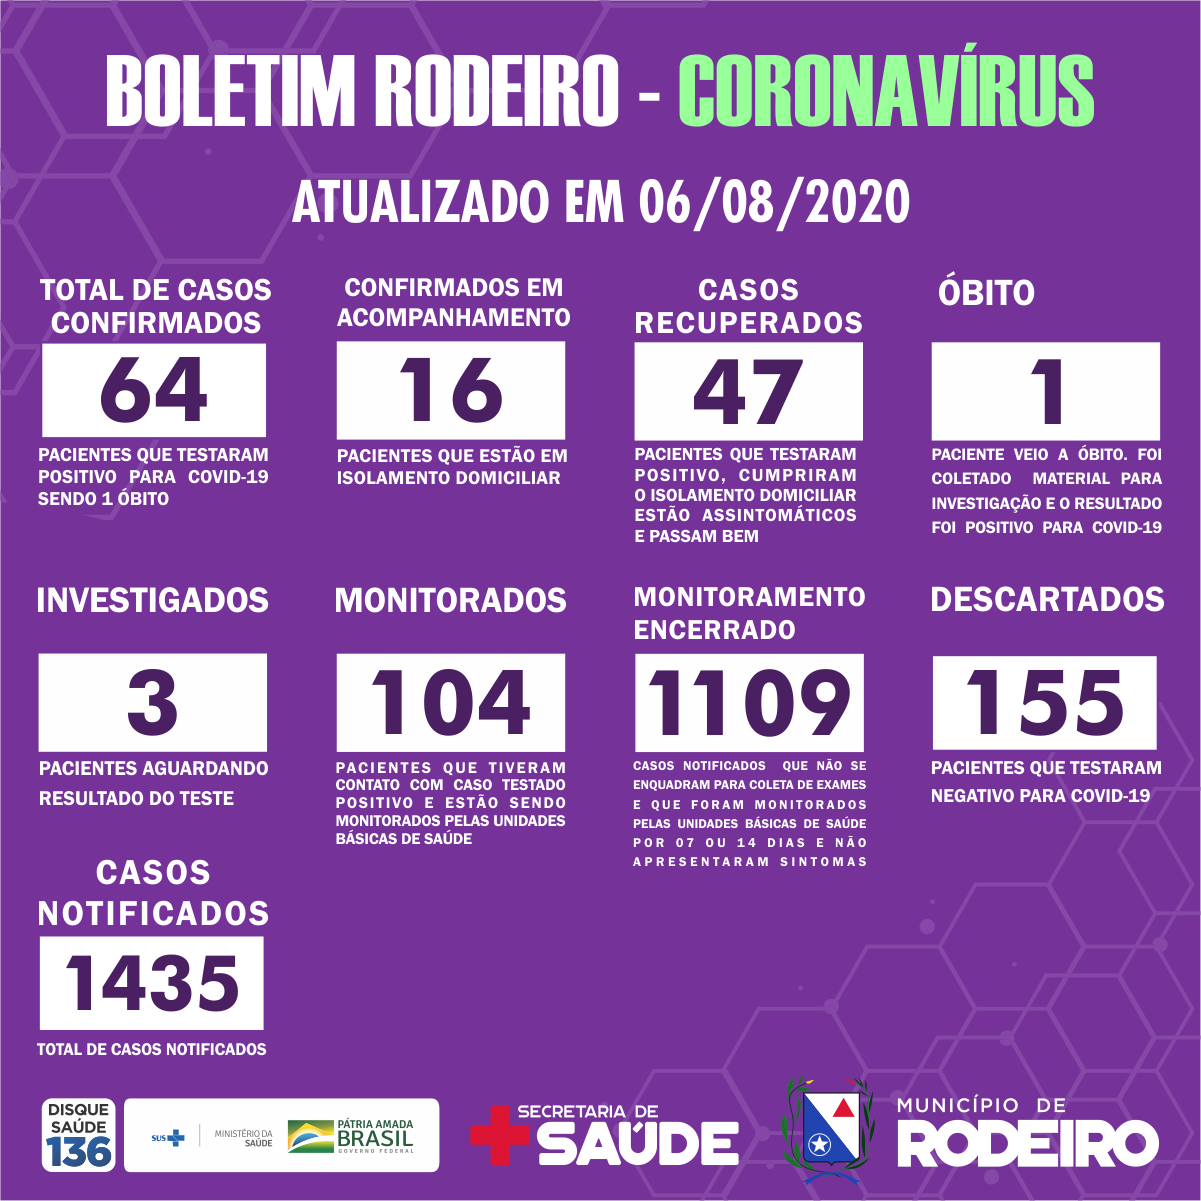 Boletim Epidemiológico do Município de Rodeiro sobre coronavírus, atualizado em 06/08/2020